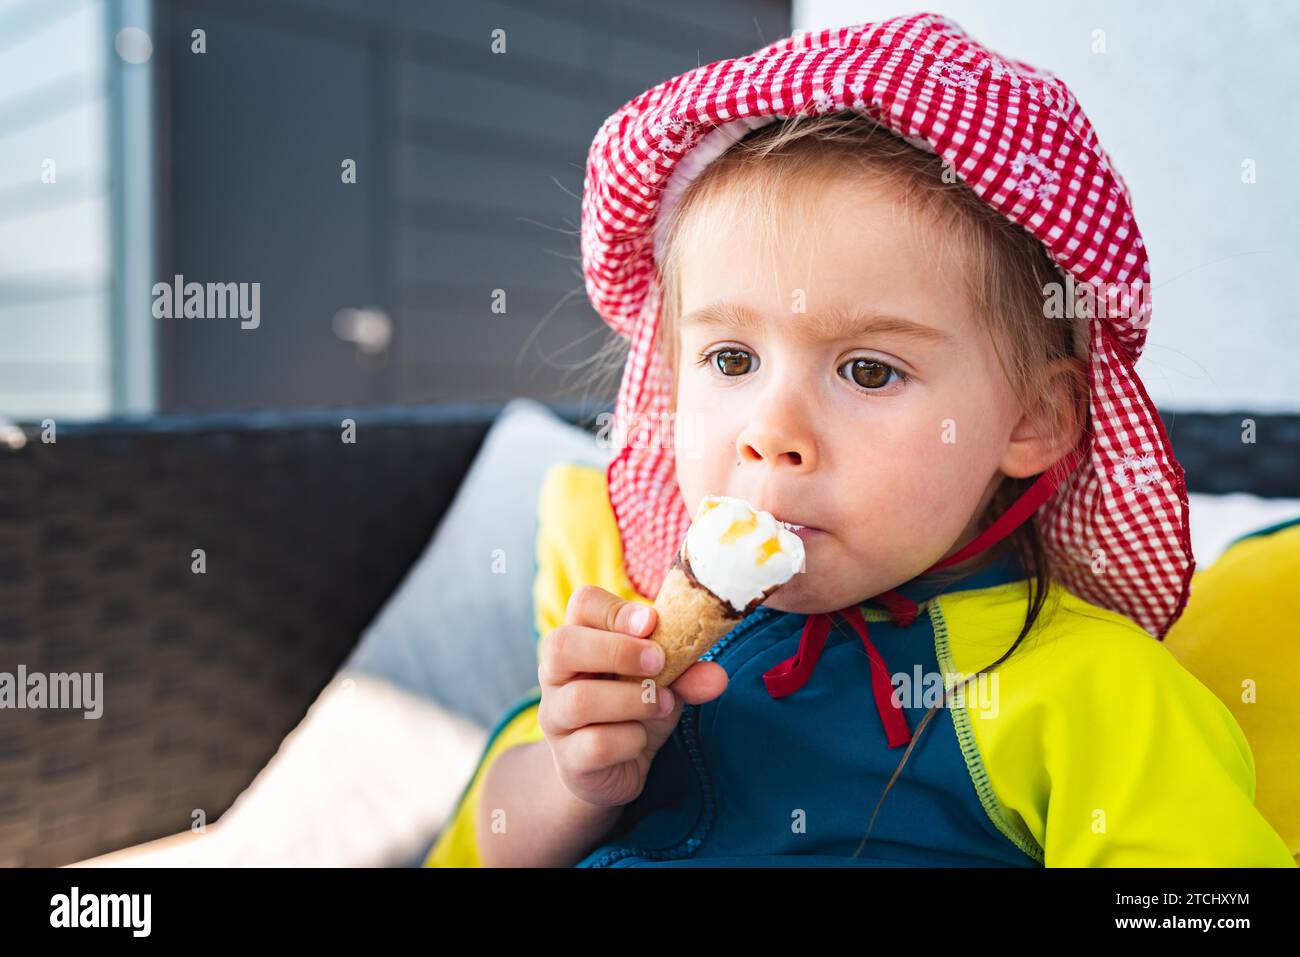 Portrait-kleines Kind mit großen Augen, das im Sommer Eis leckt. 2-jähriges Mädchen. Kinder essen Süßigkeiten Stockfoto